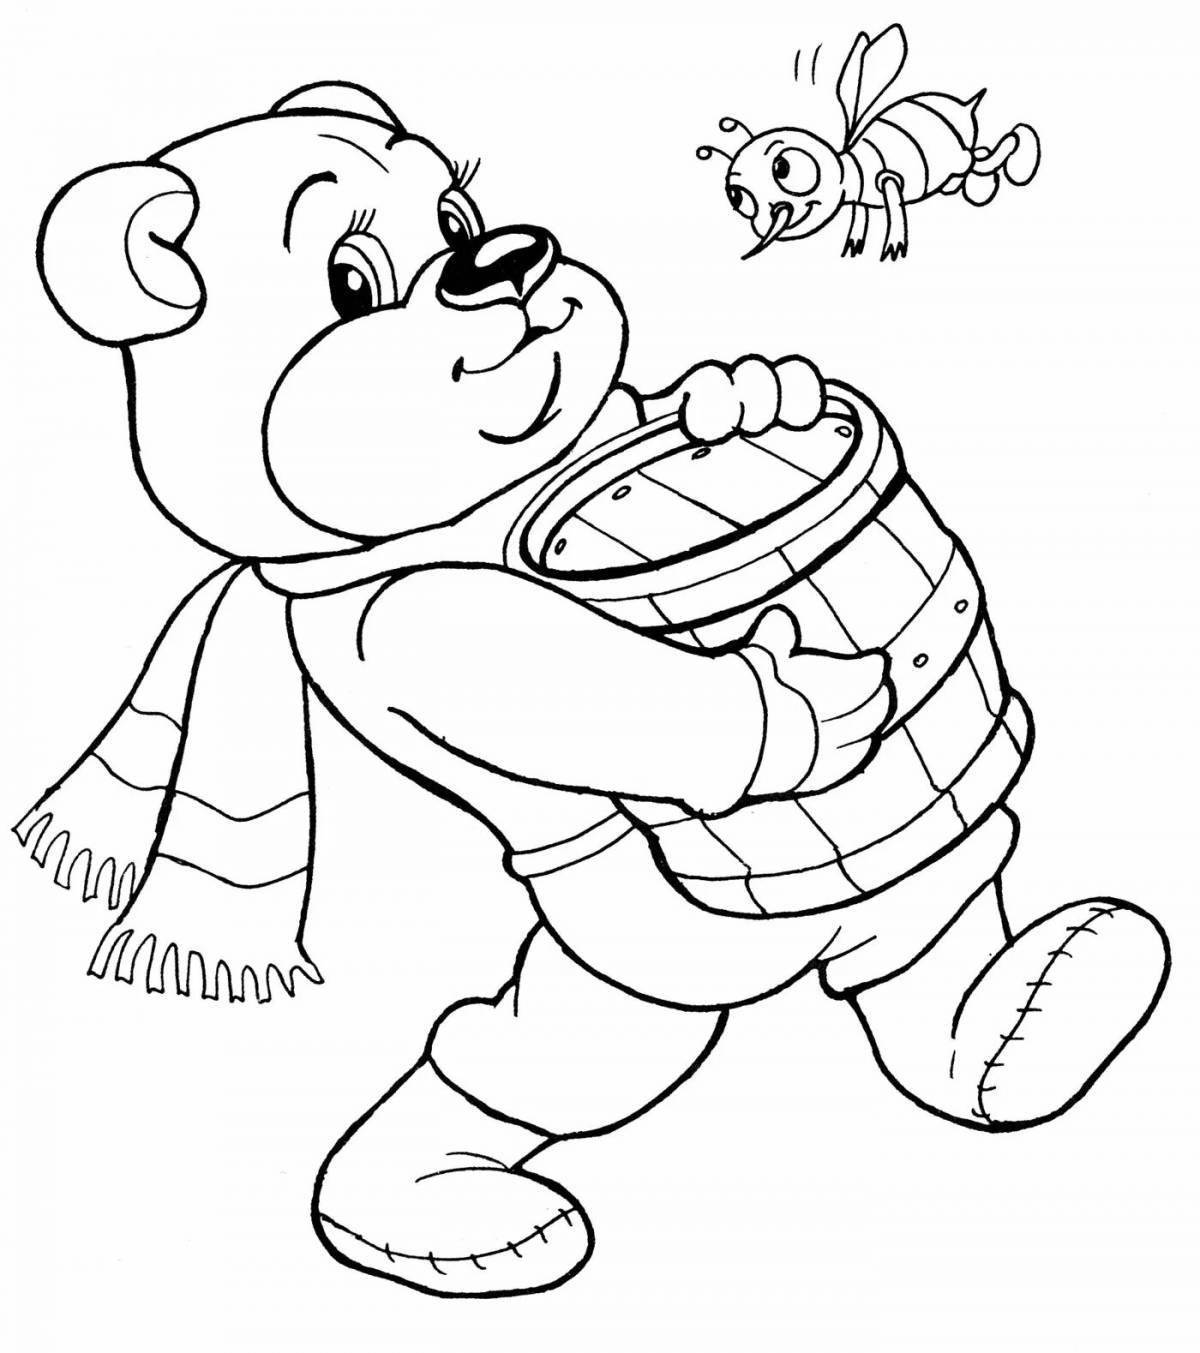 Медведь с медом раскраска для детей